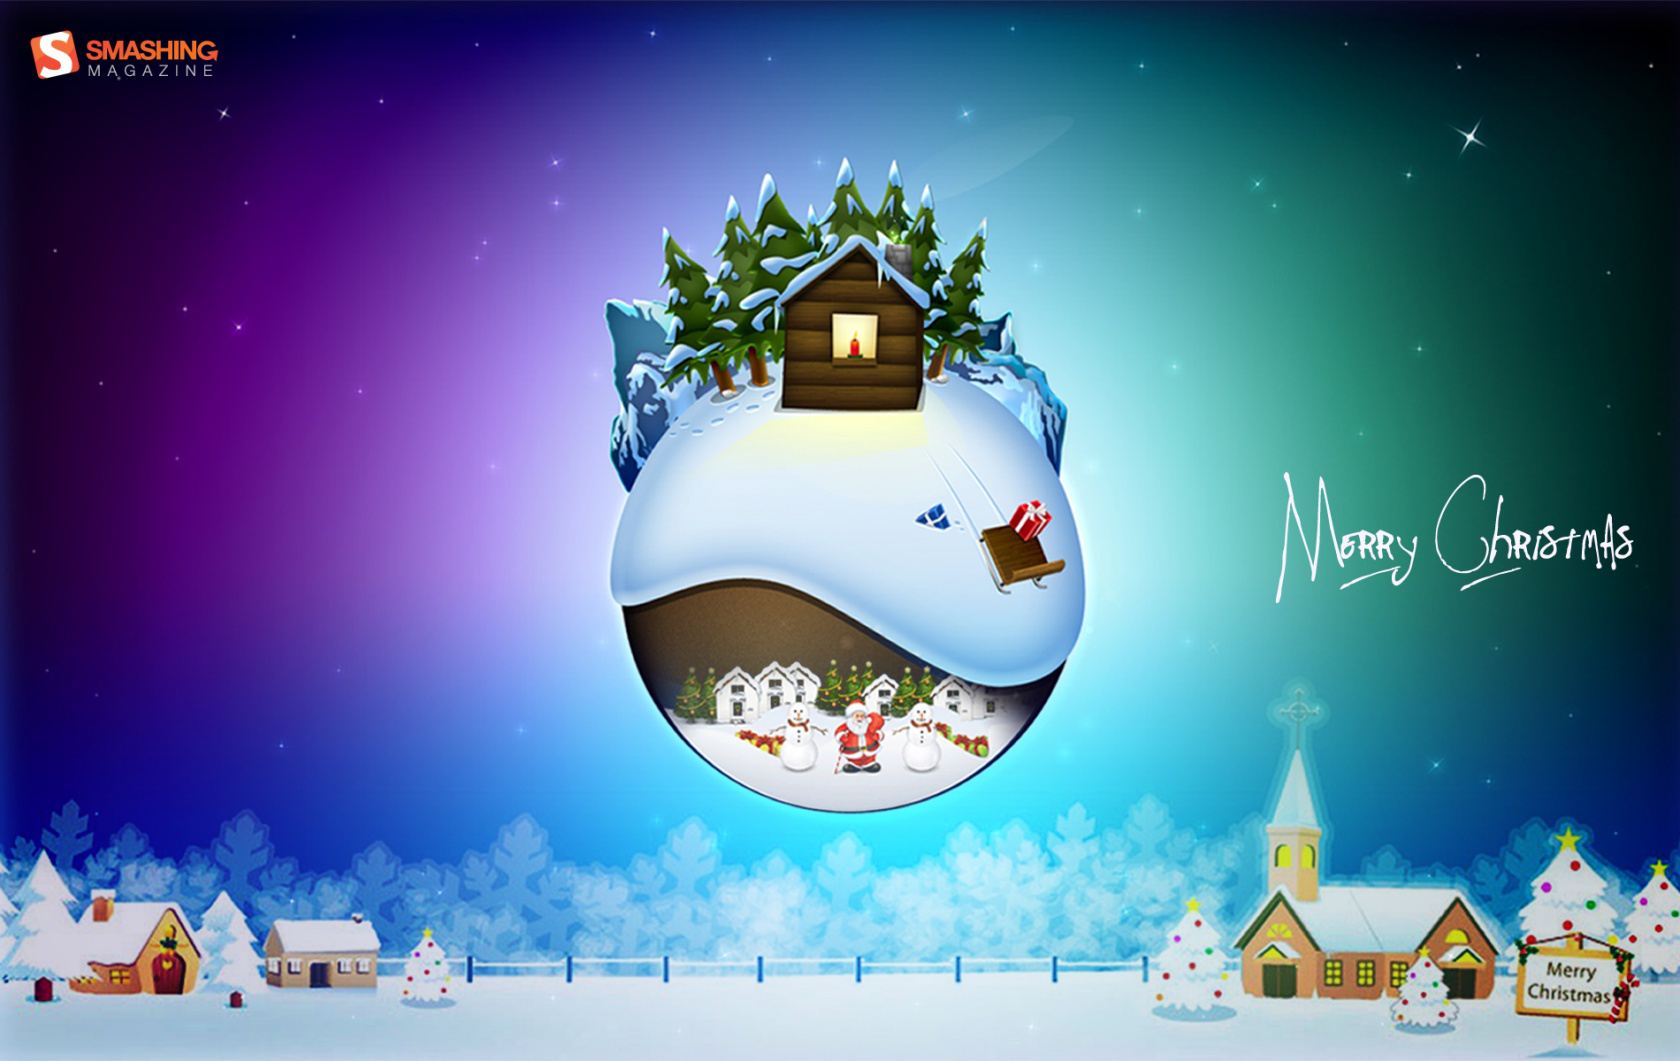 Papel de parede de Natal grátis com uma ilustração do mundo como um globo de neve